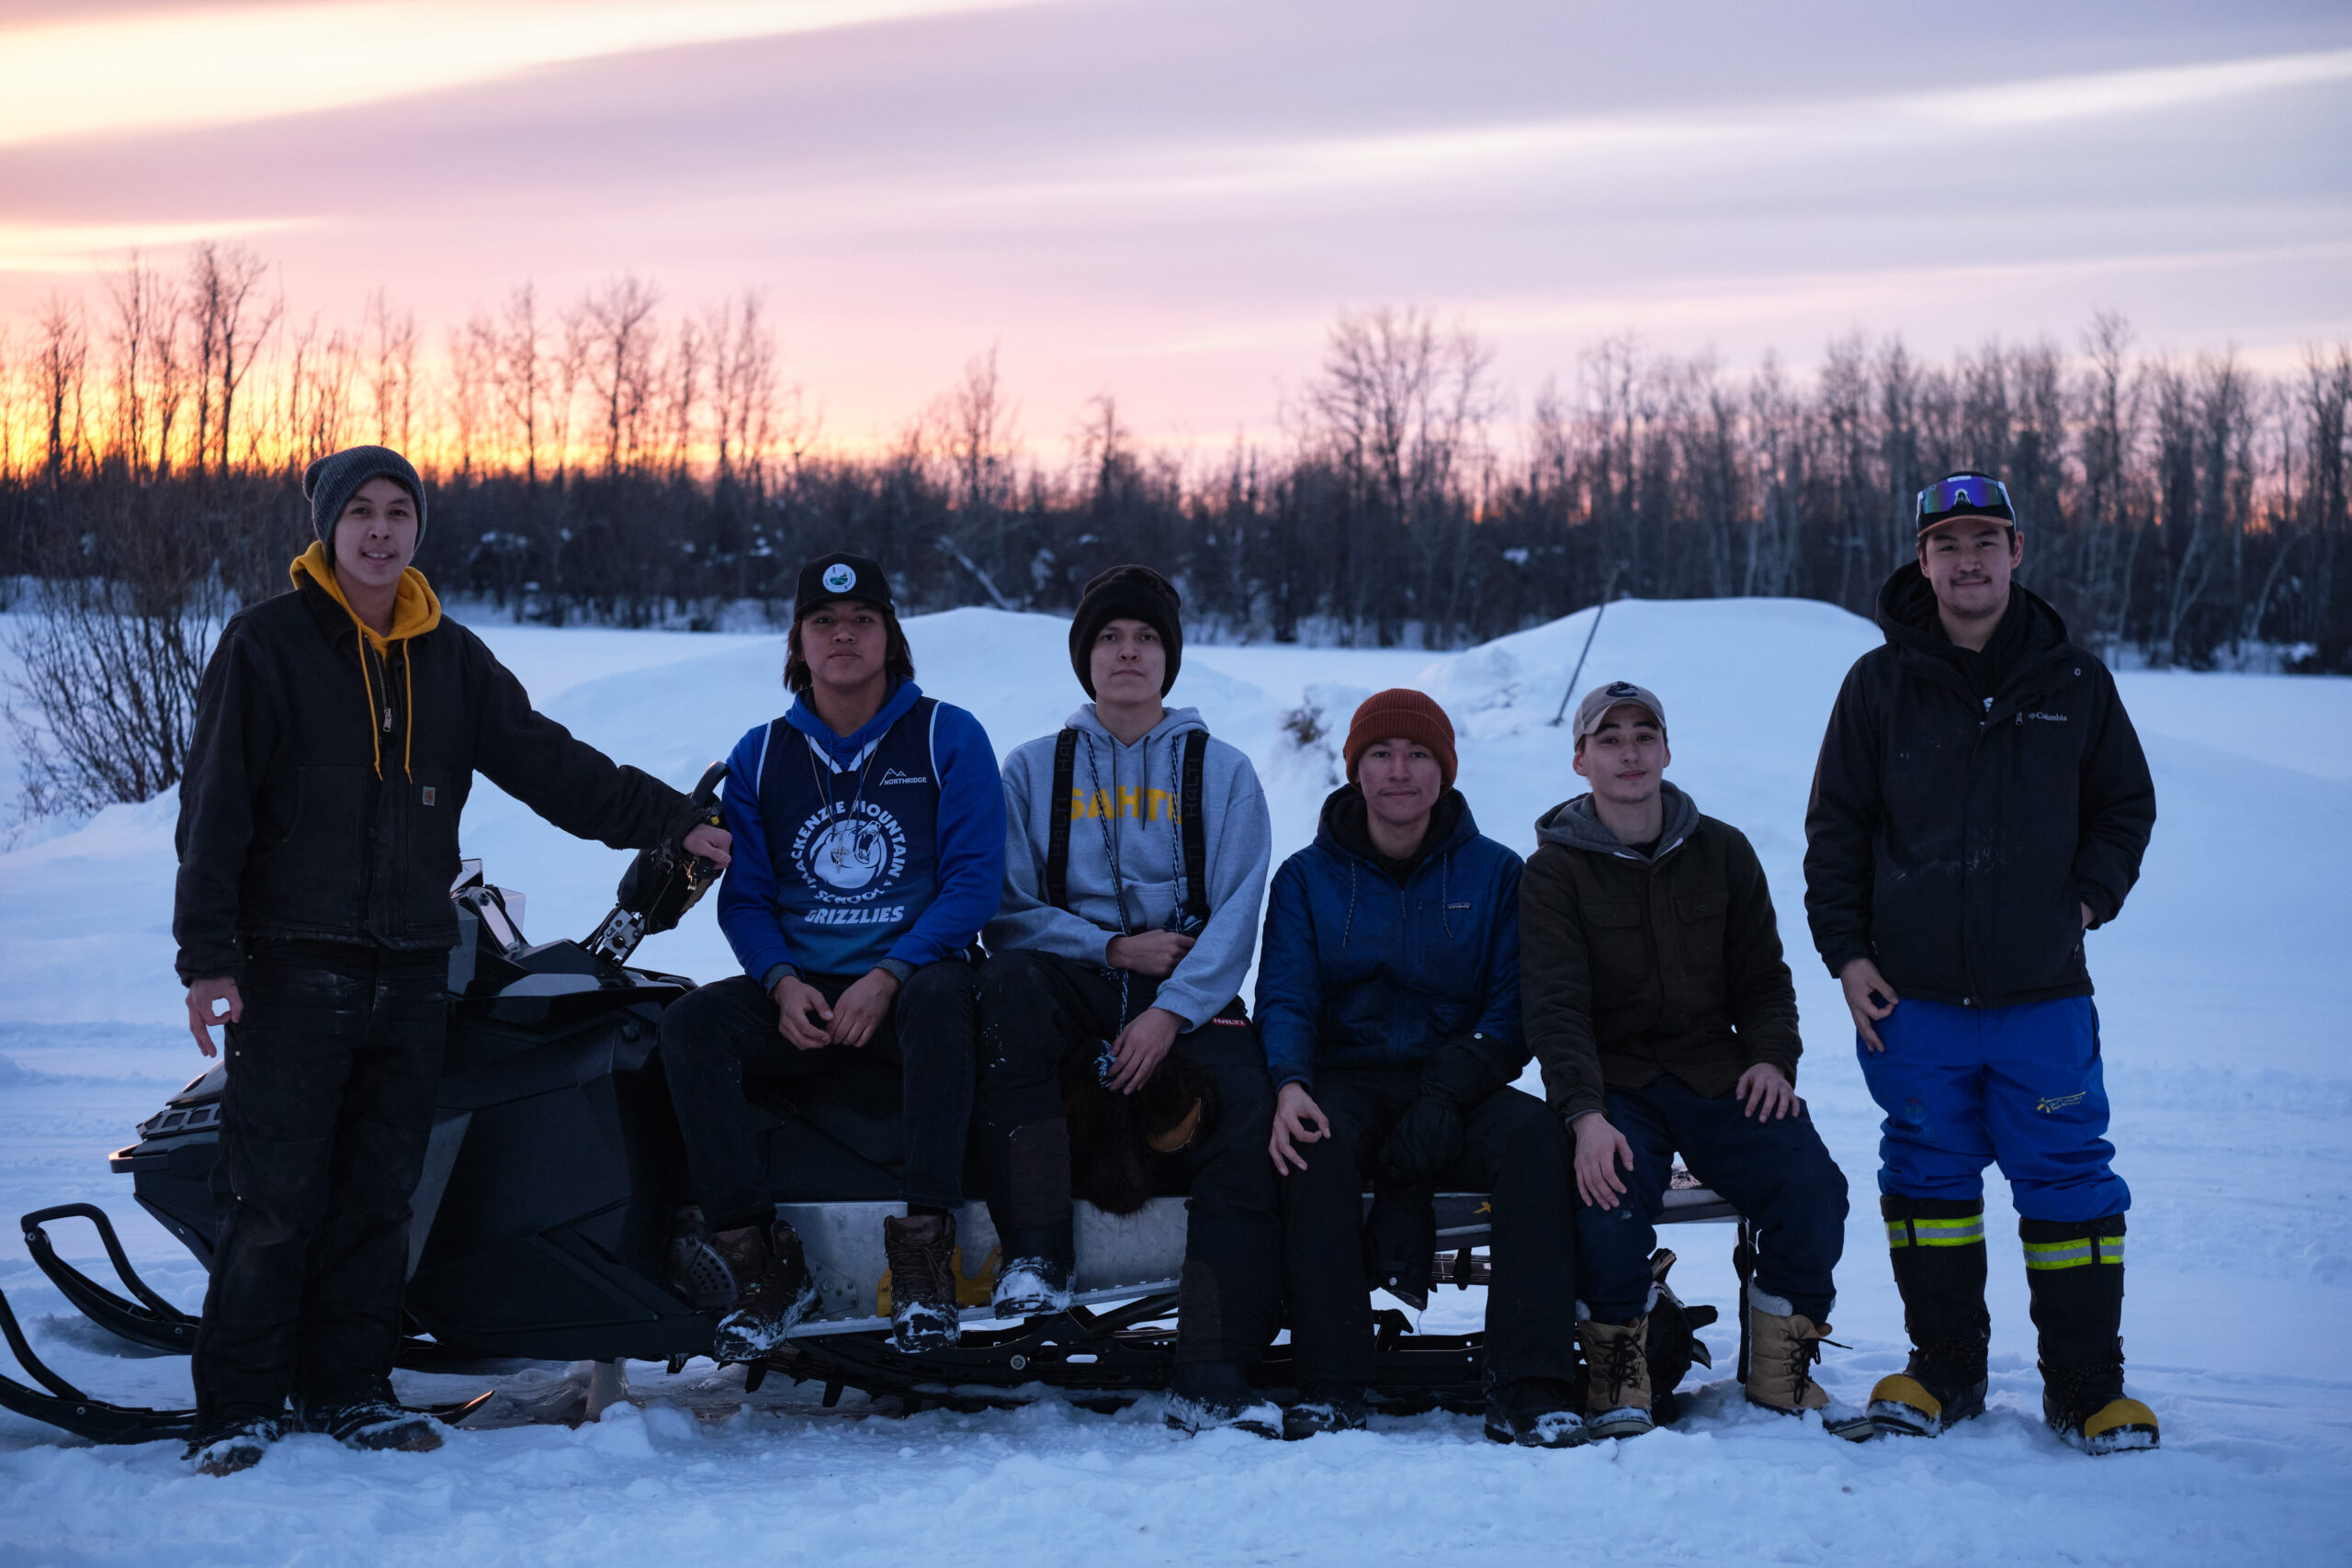 Six jeunes gens en rang, certains debout, d'autres assis sur une machine à neige, dans un champ enneigé avec le soleil couchant en arrière-plan.